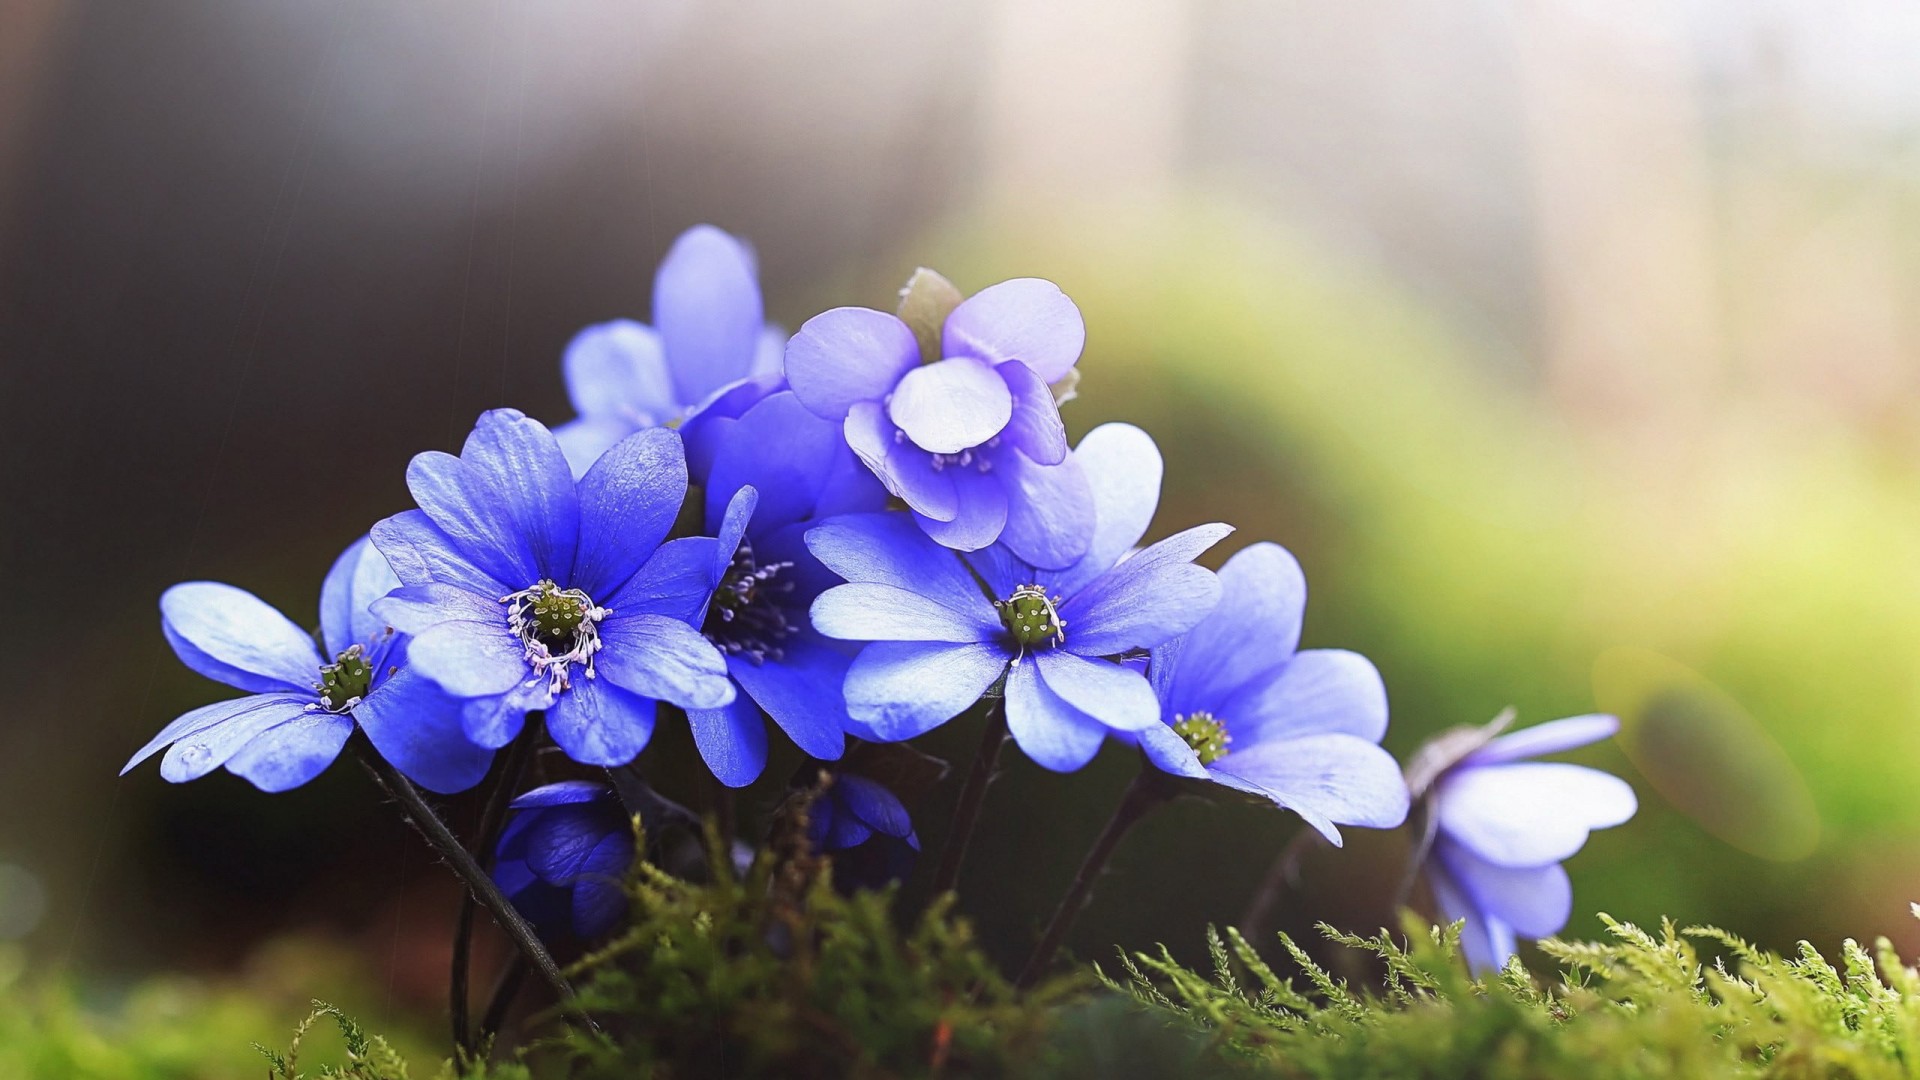 Blue flowers in blur green background HD Wallpaper